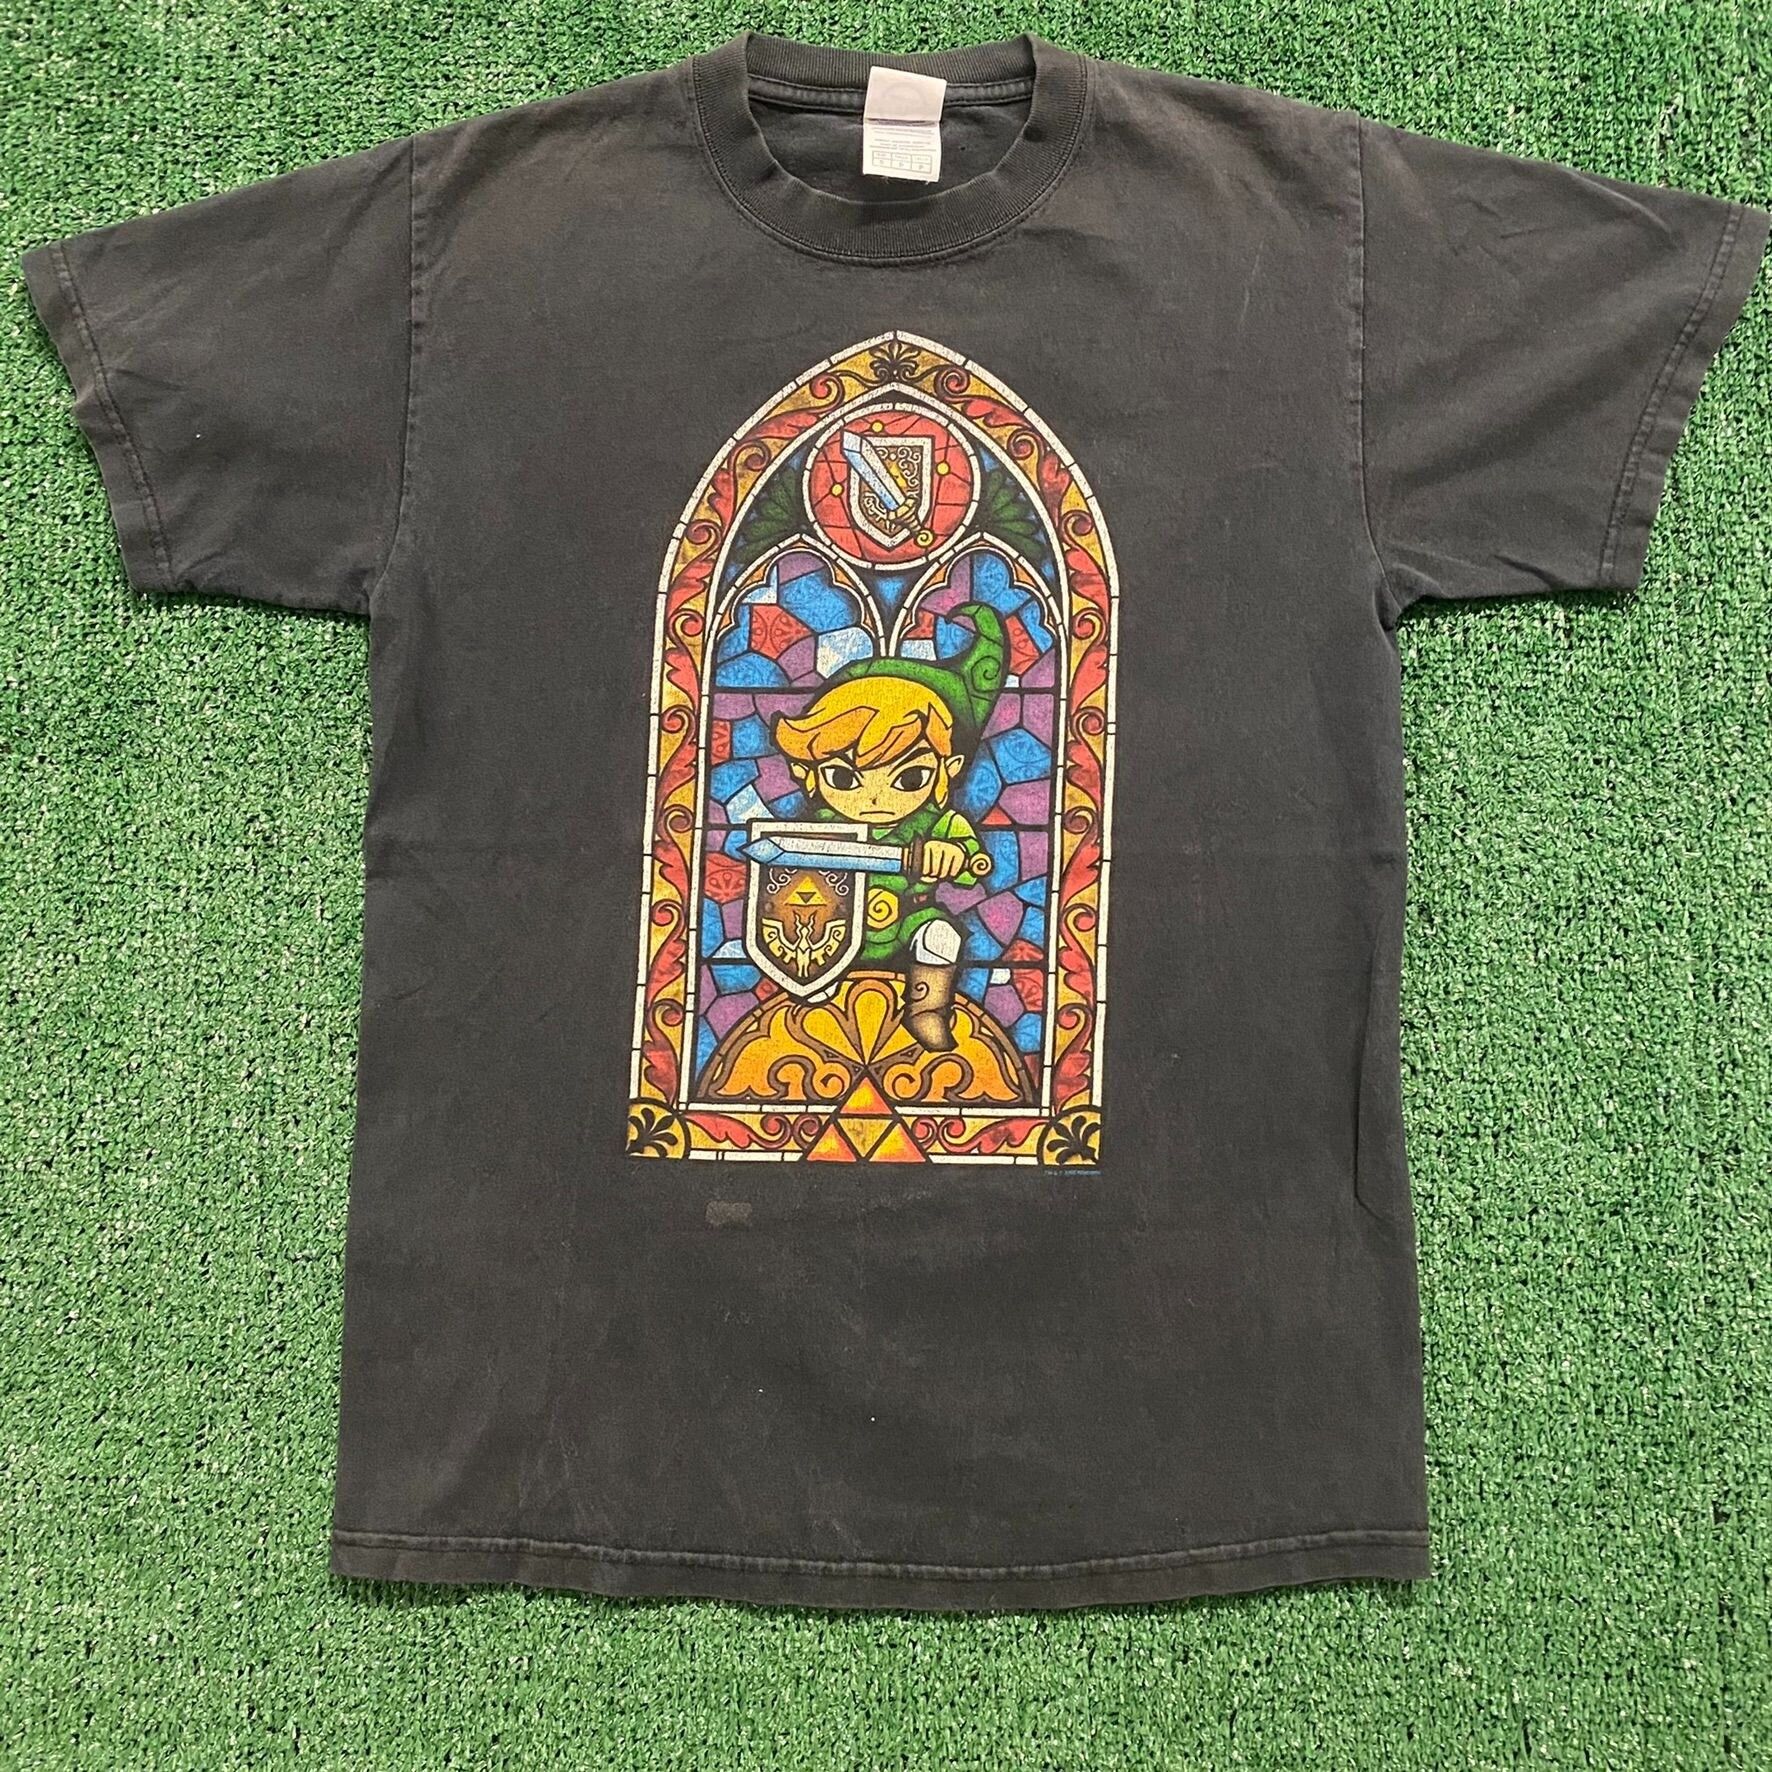 Vintage Nintendo Link Vintage Legend of Zelda T-Shirt Size US S / EU 44-46 / 1 - 1 Preview